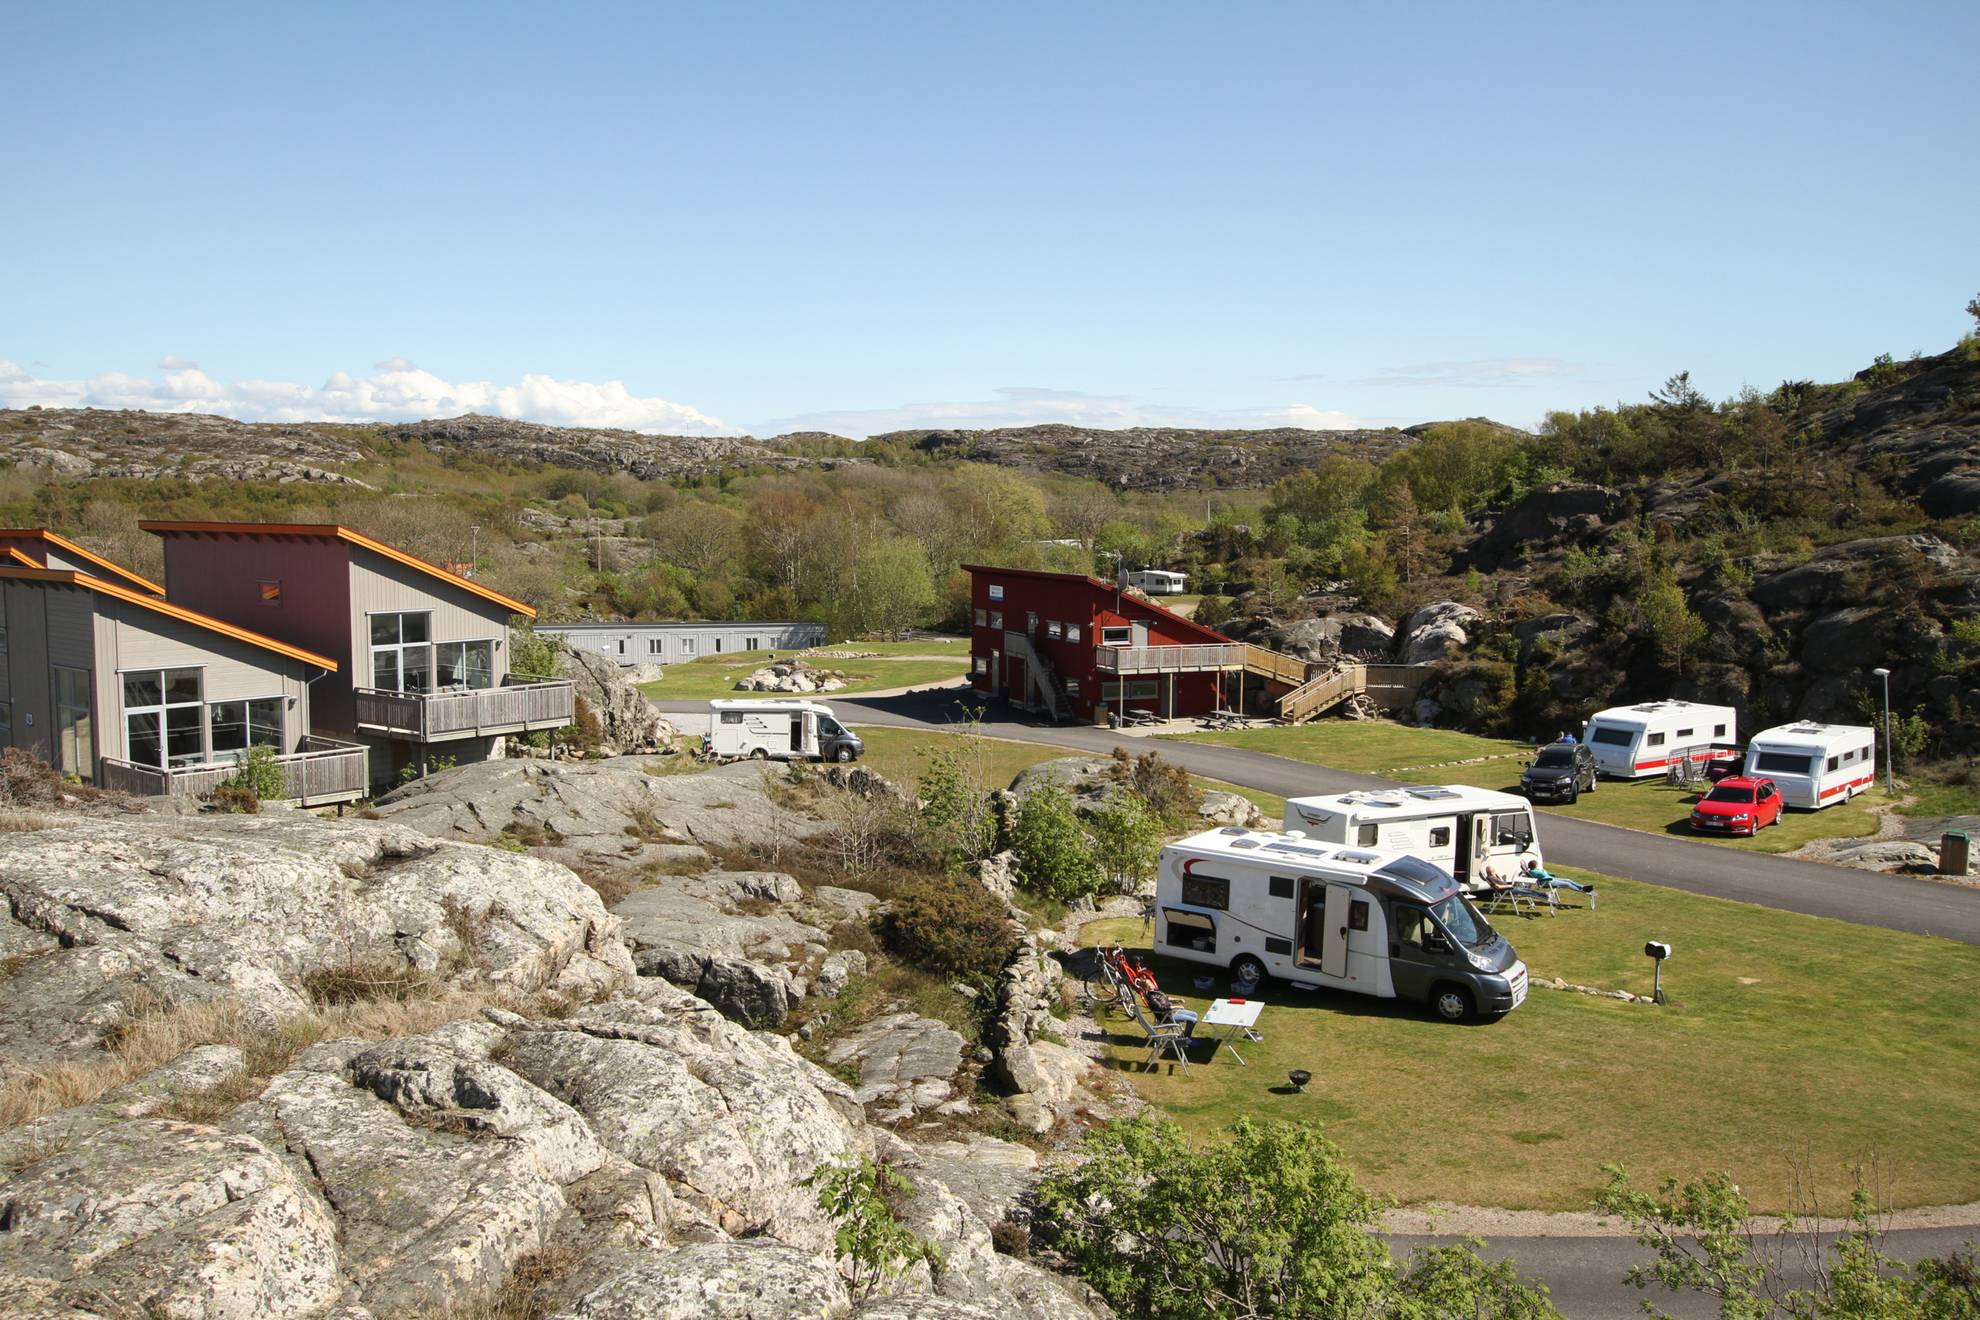 Campers geparkeerd op een camping naast een stenen klif. Op de achtergrond zijn drie grote kampeerhutten met schuine daken te zien.